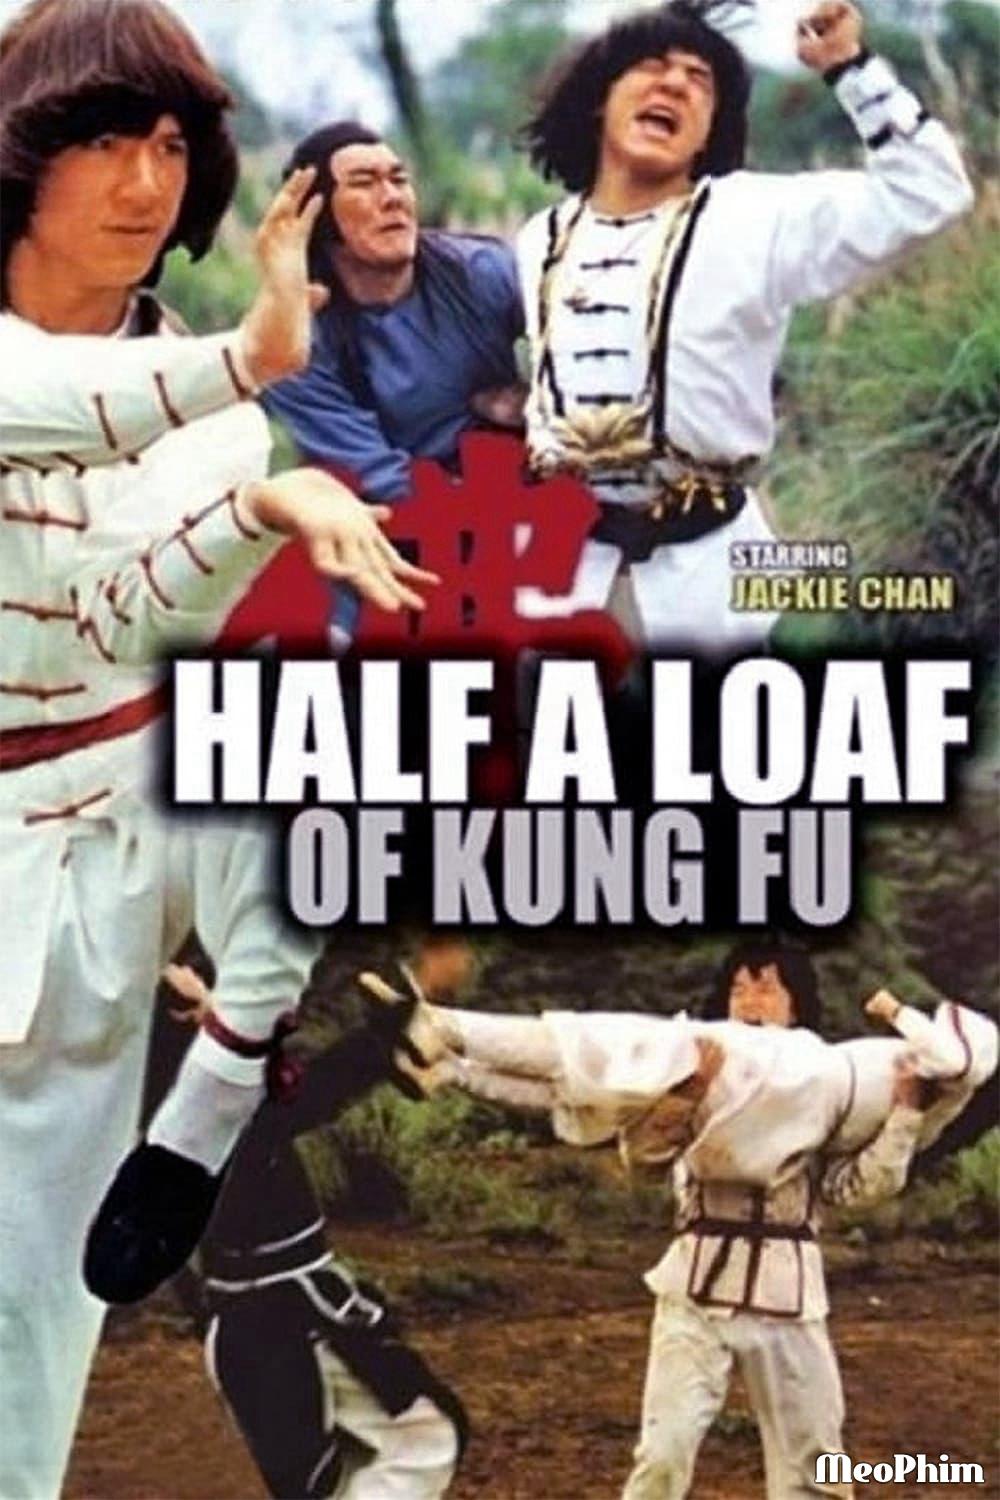 Nhất Chiêu Bán Thức Sấm Giang Hồ - Half a Loaf of Kung Fu (1978)